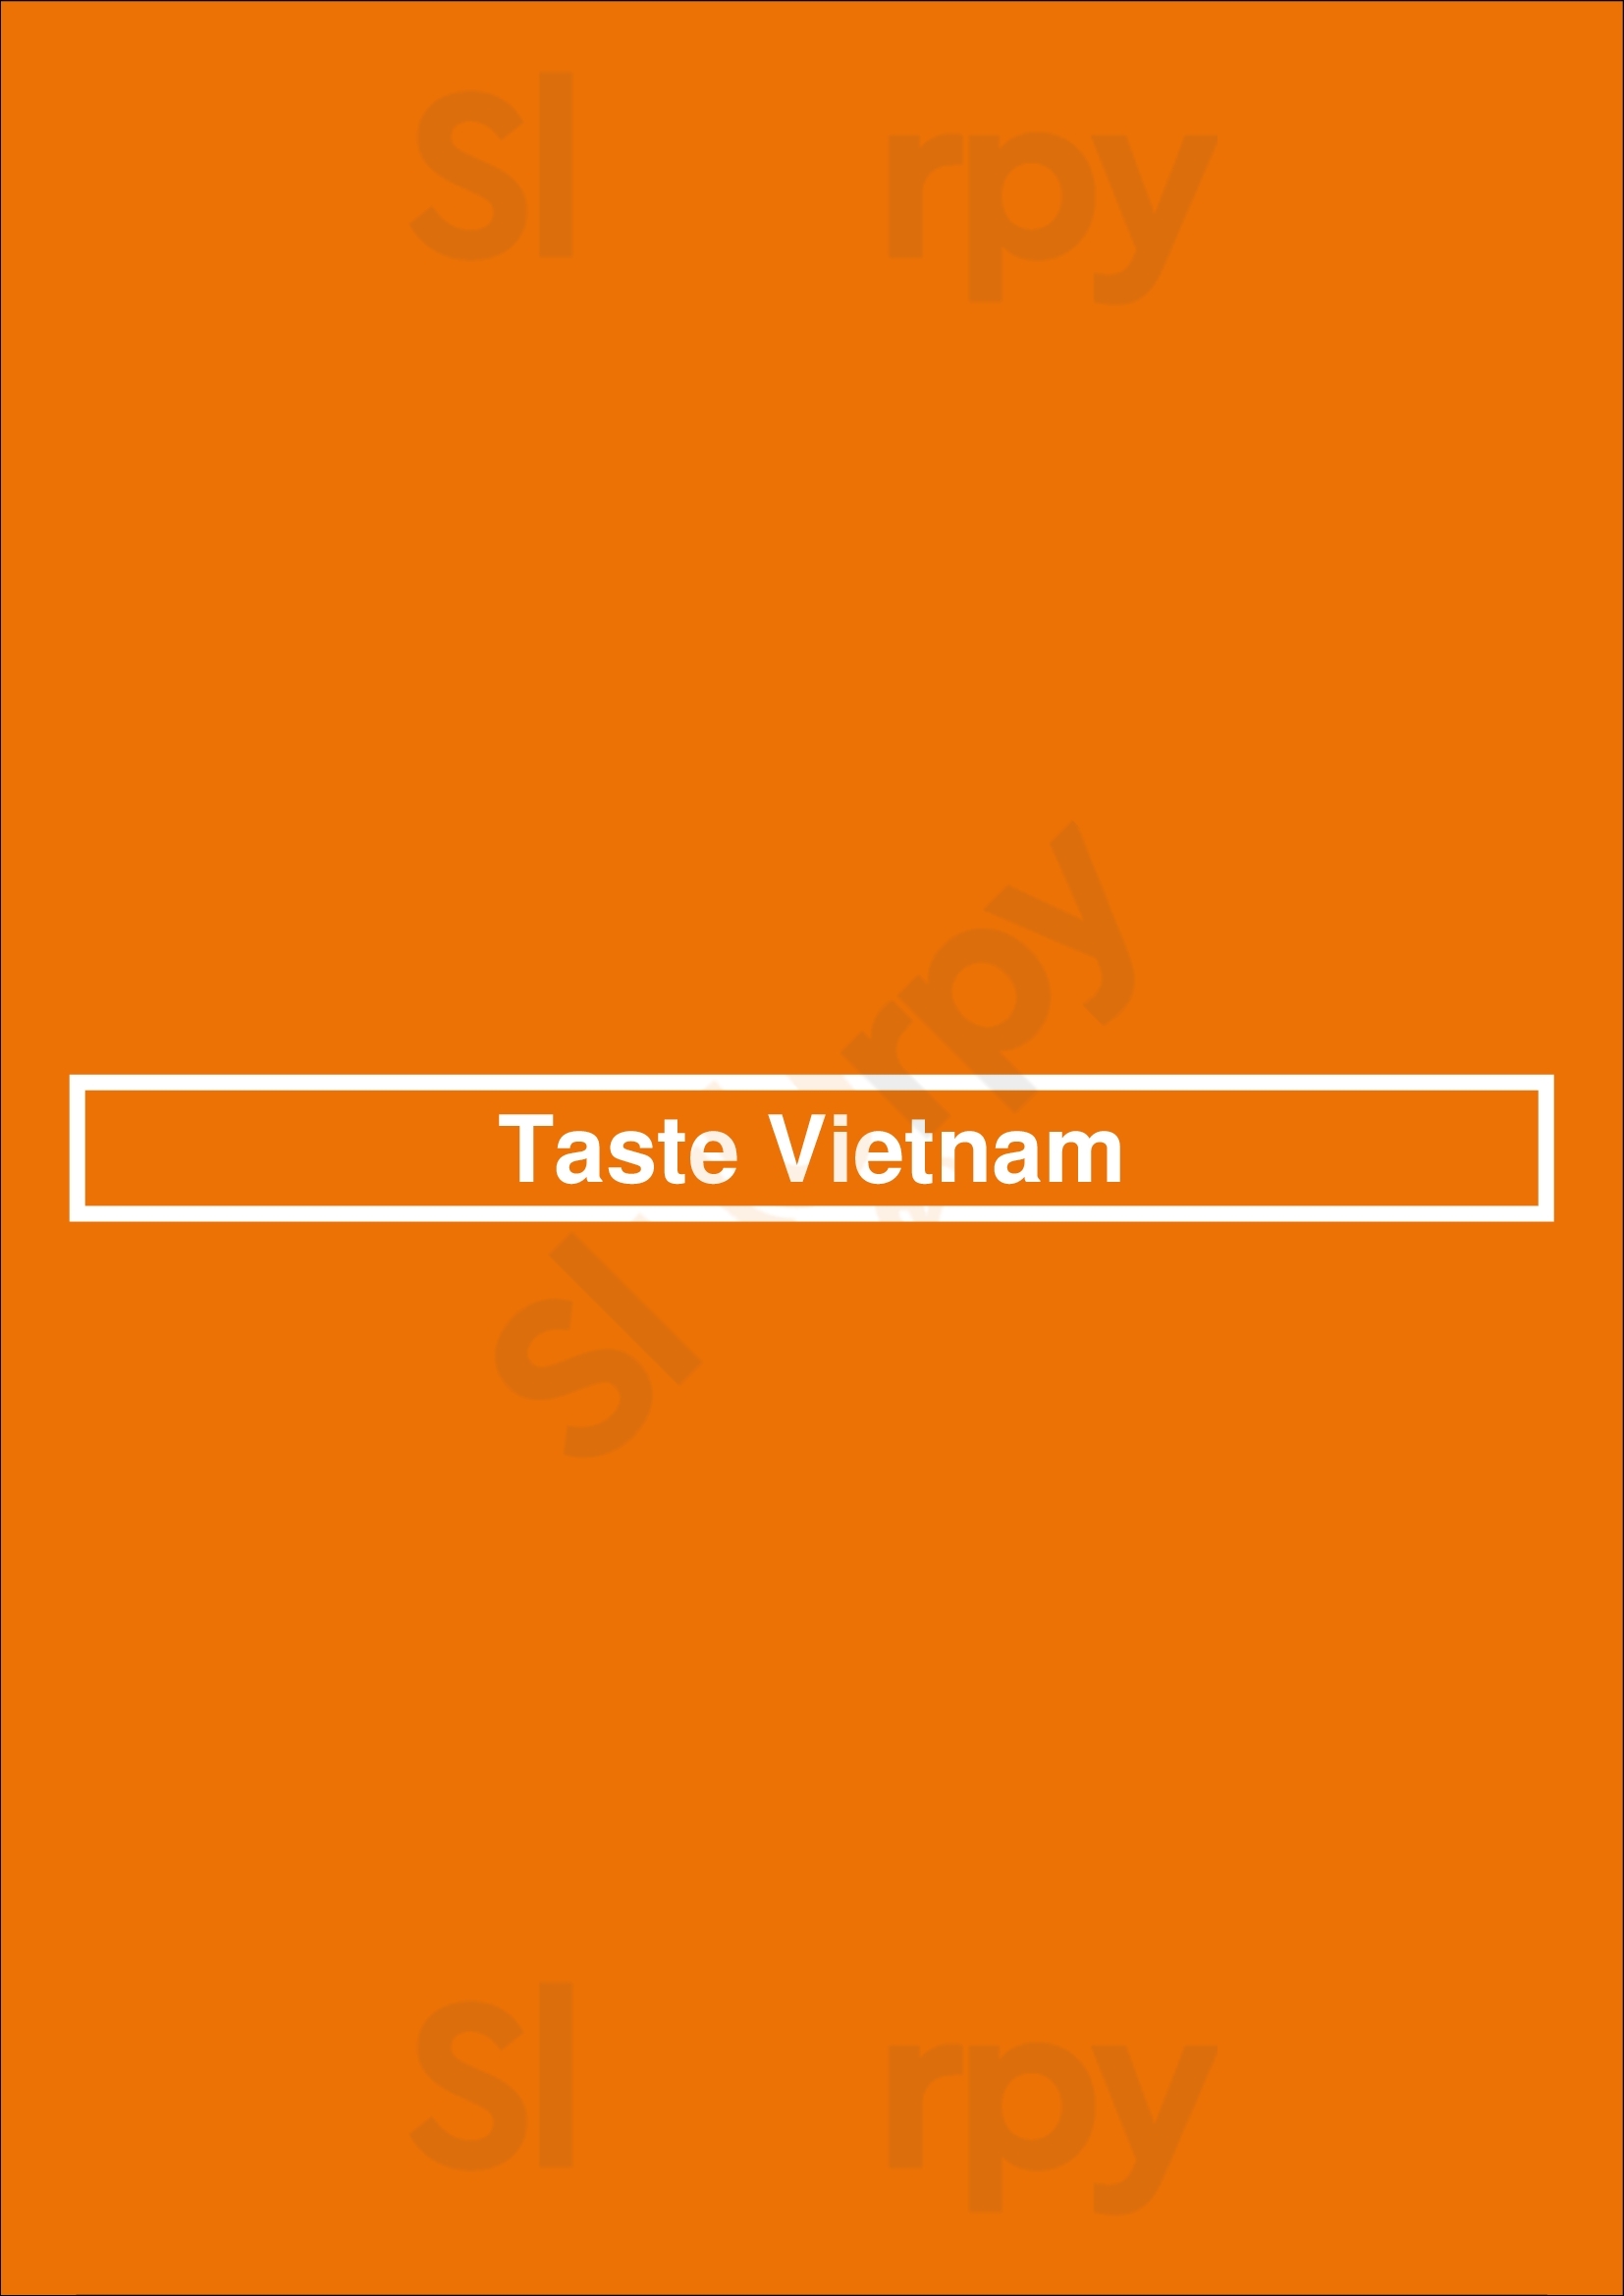 Taste Vietnam Coventry Menu - 1